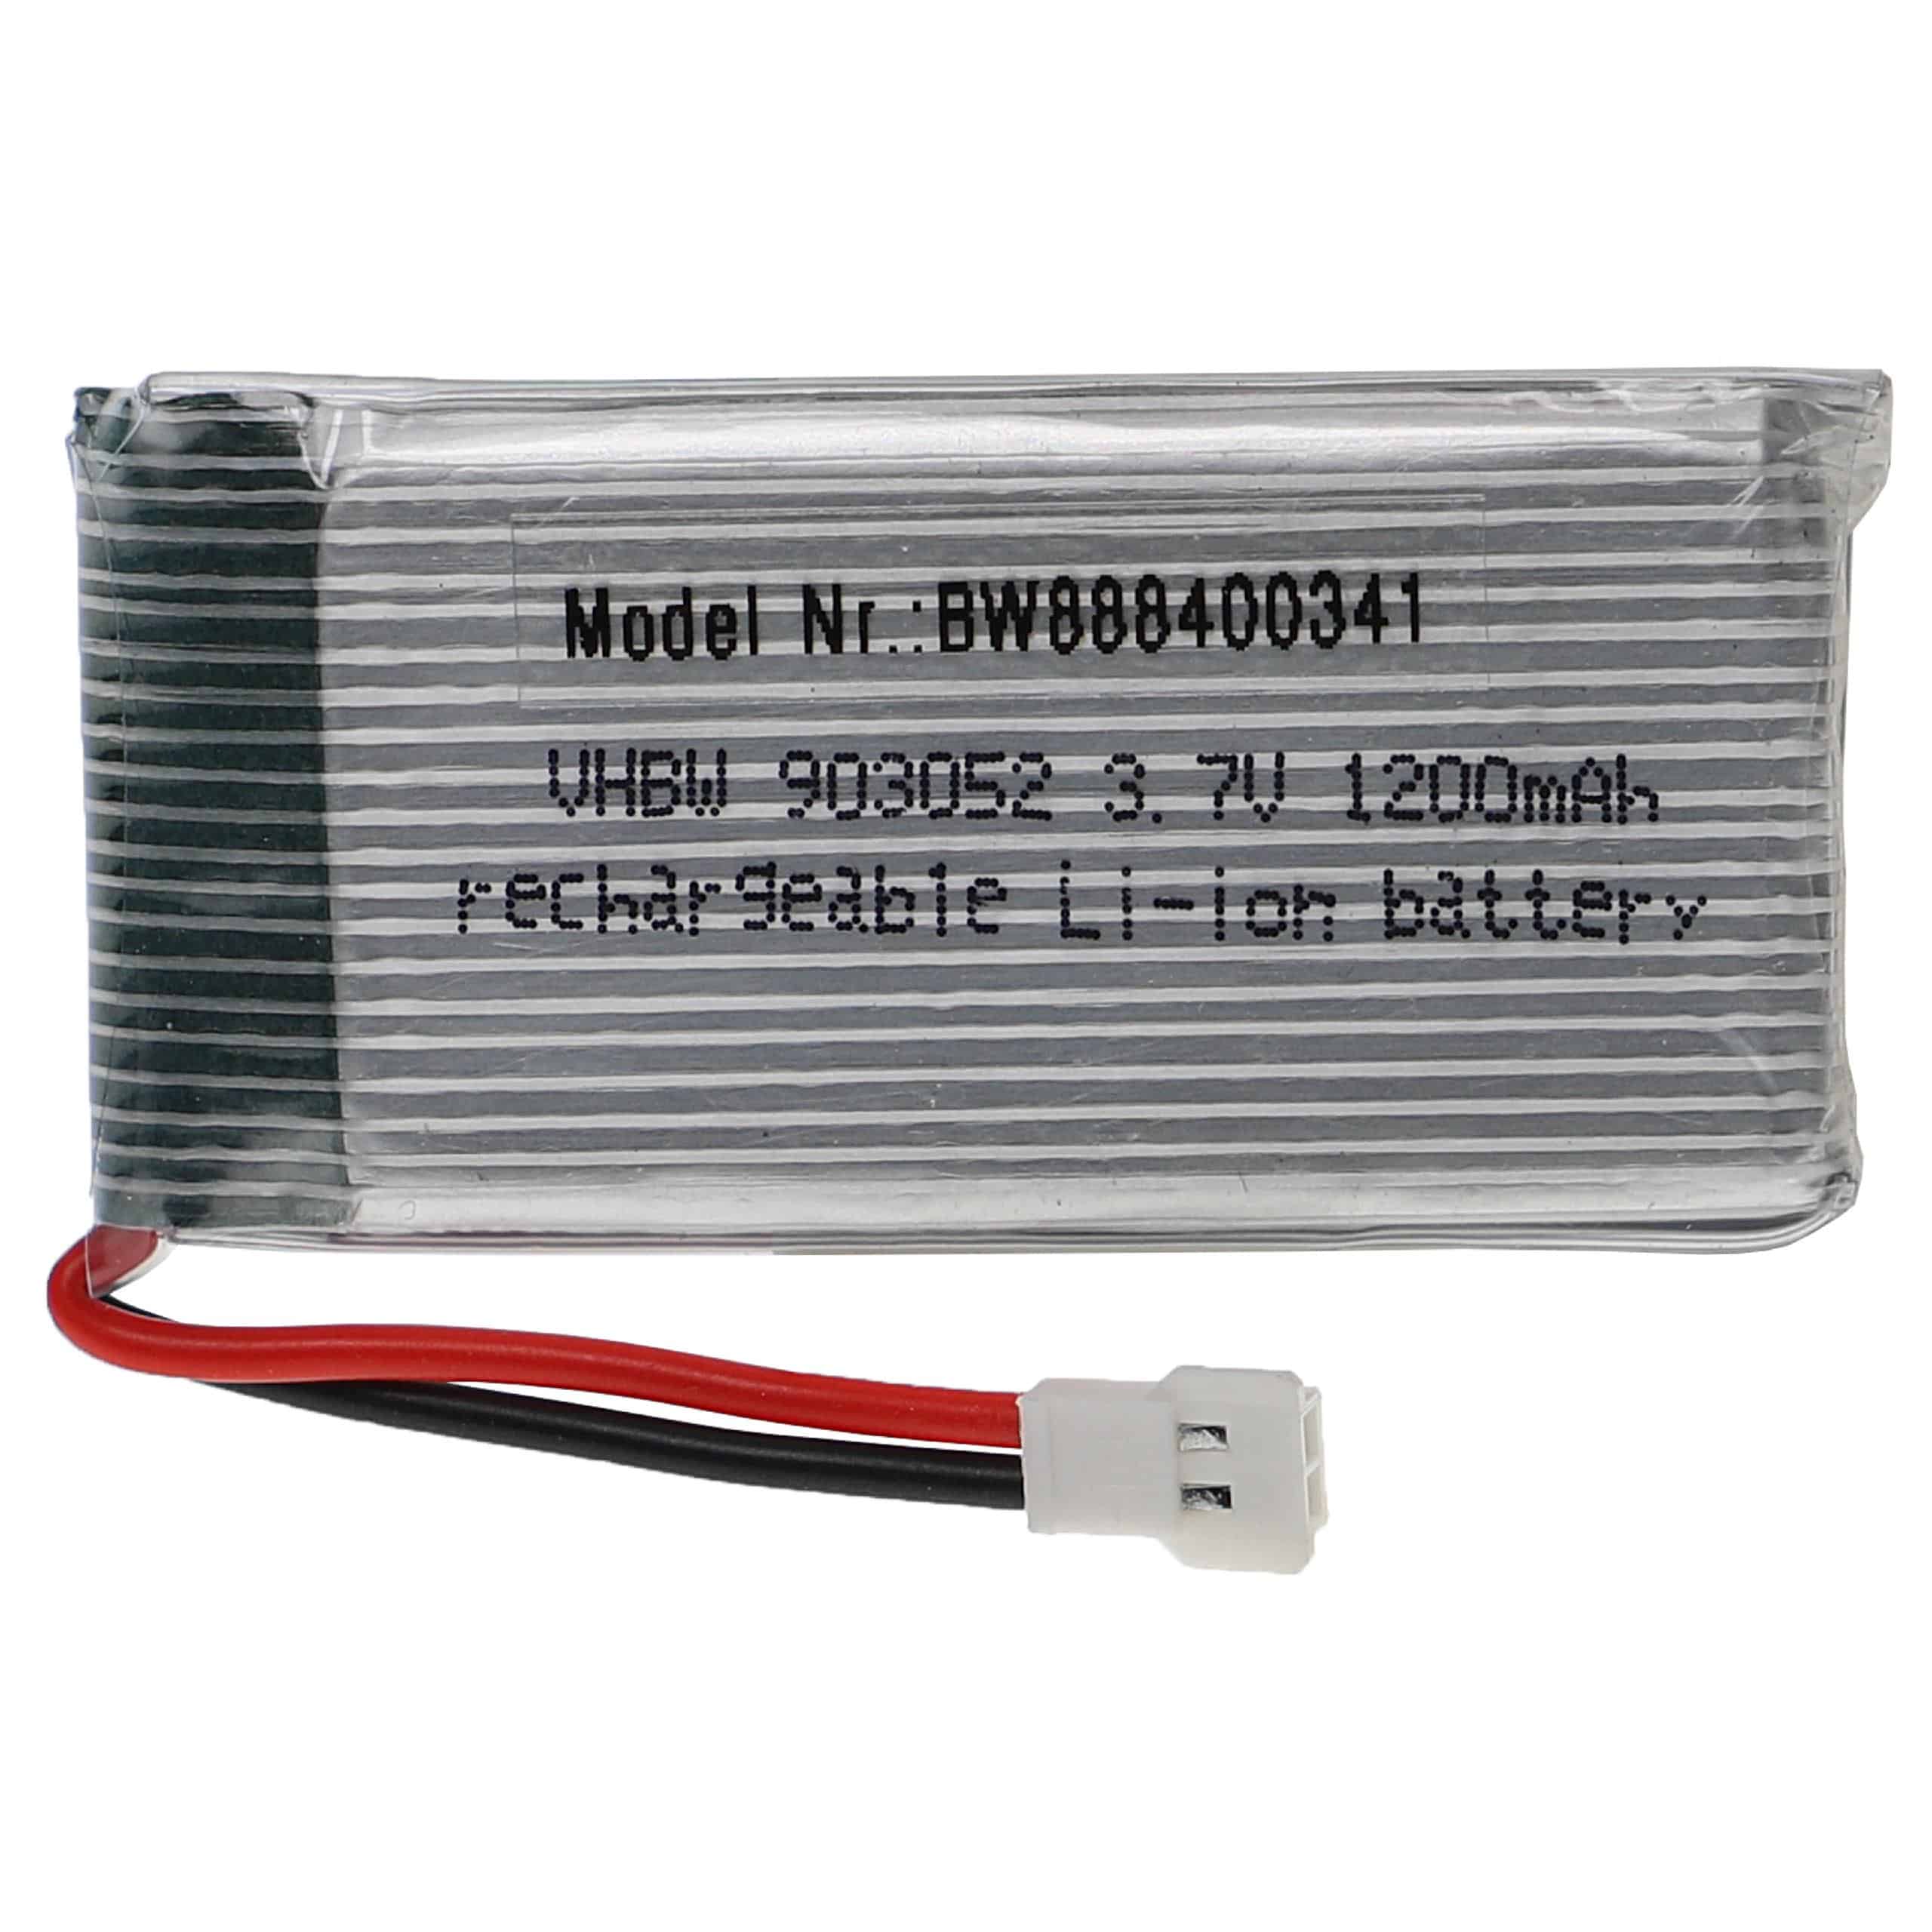 Batería para dispositivos modelismo - 1200 mAh 3,7 V Li-poli, XH 2.54 2P